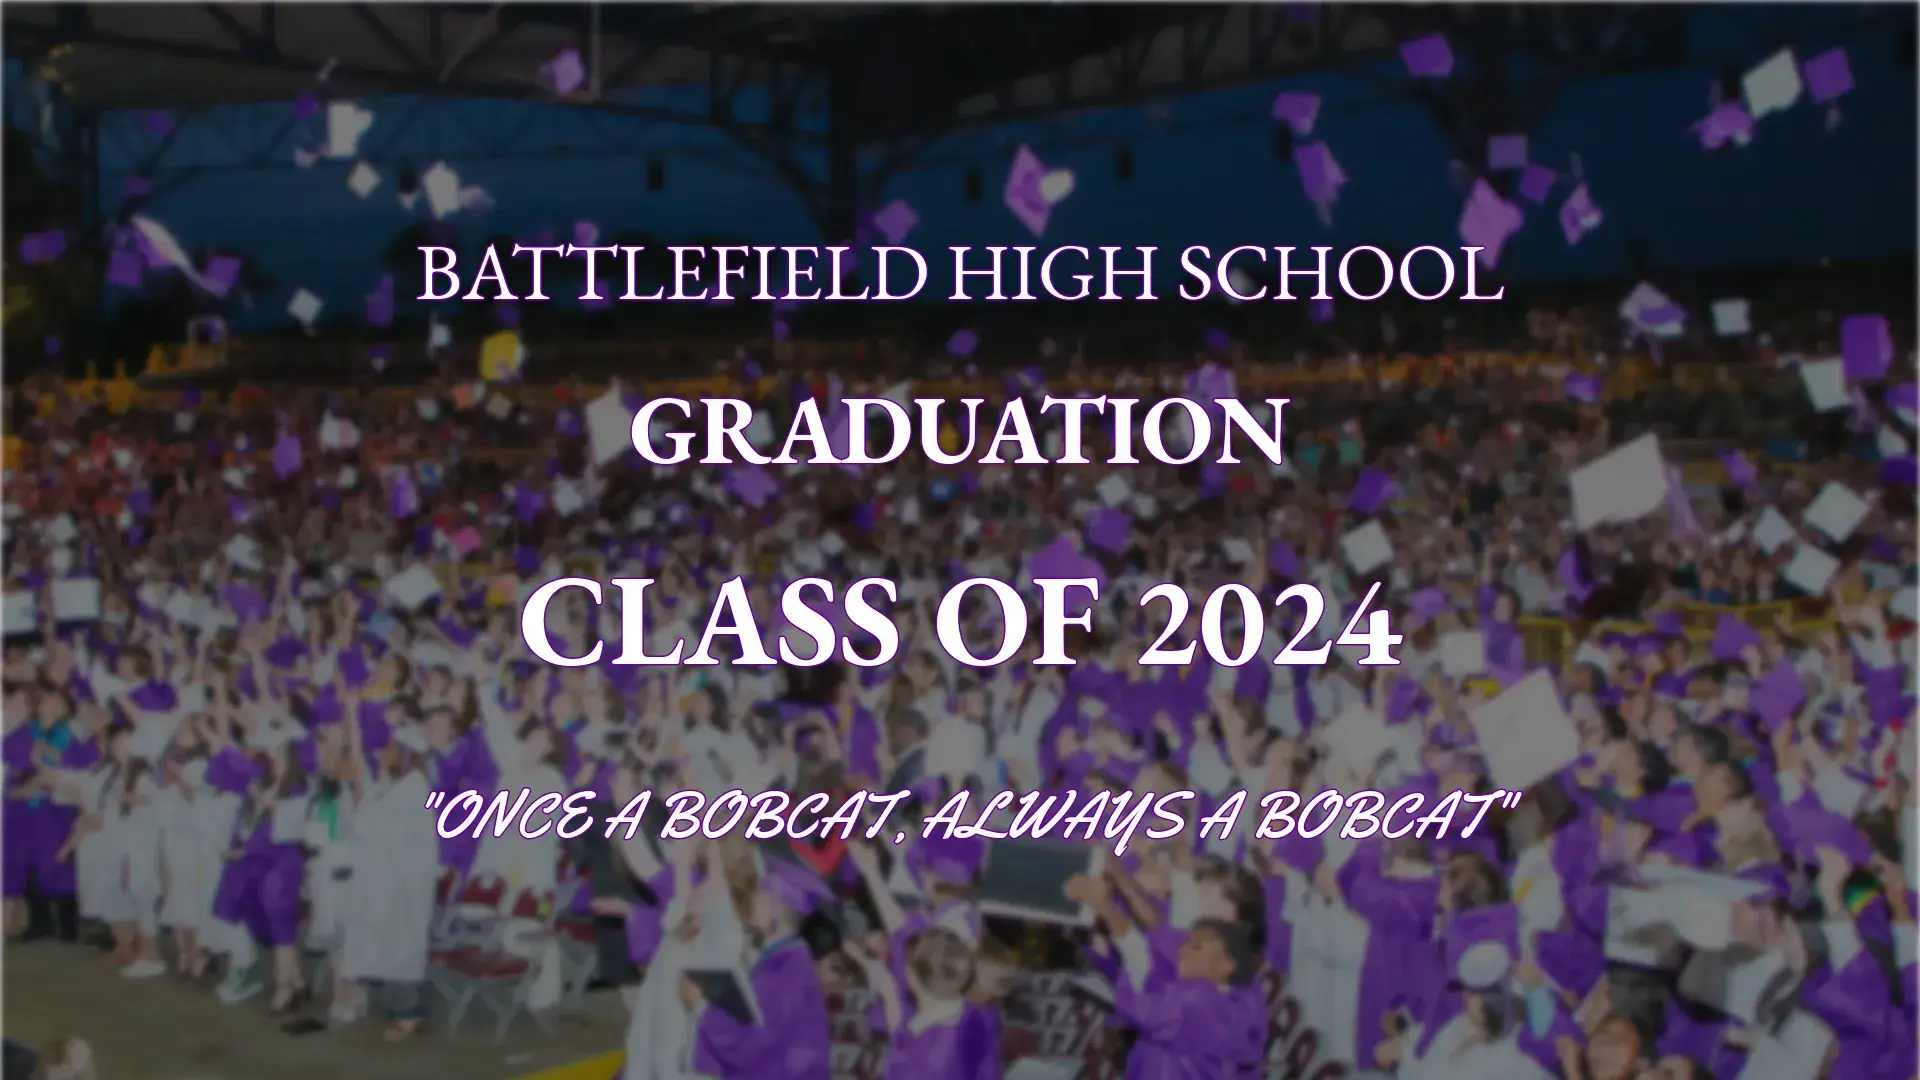 Class of 2024 Graduation Decorative